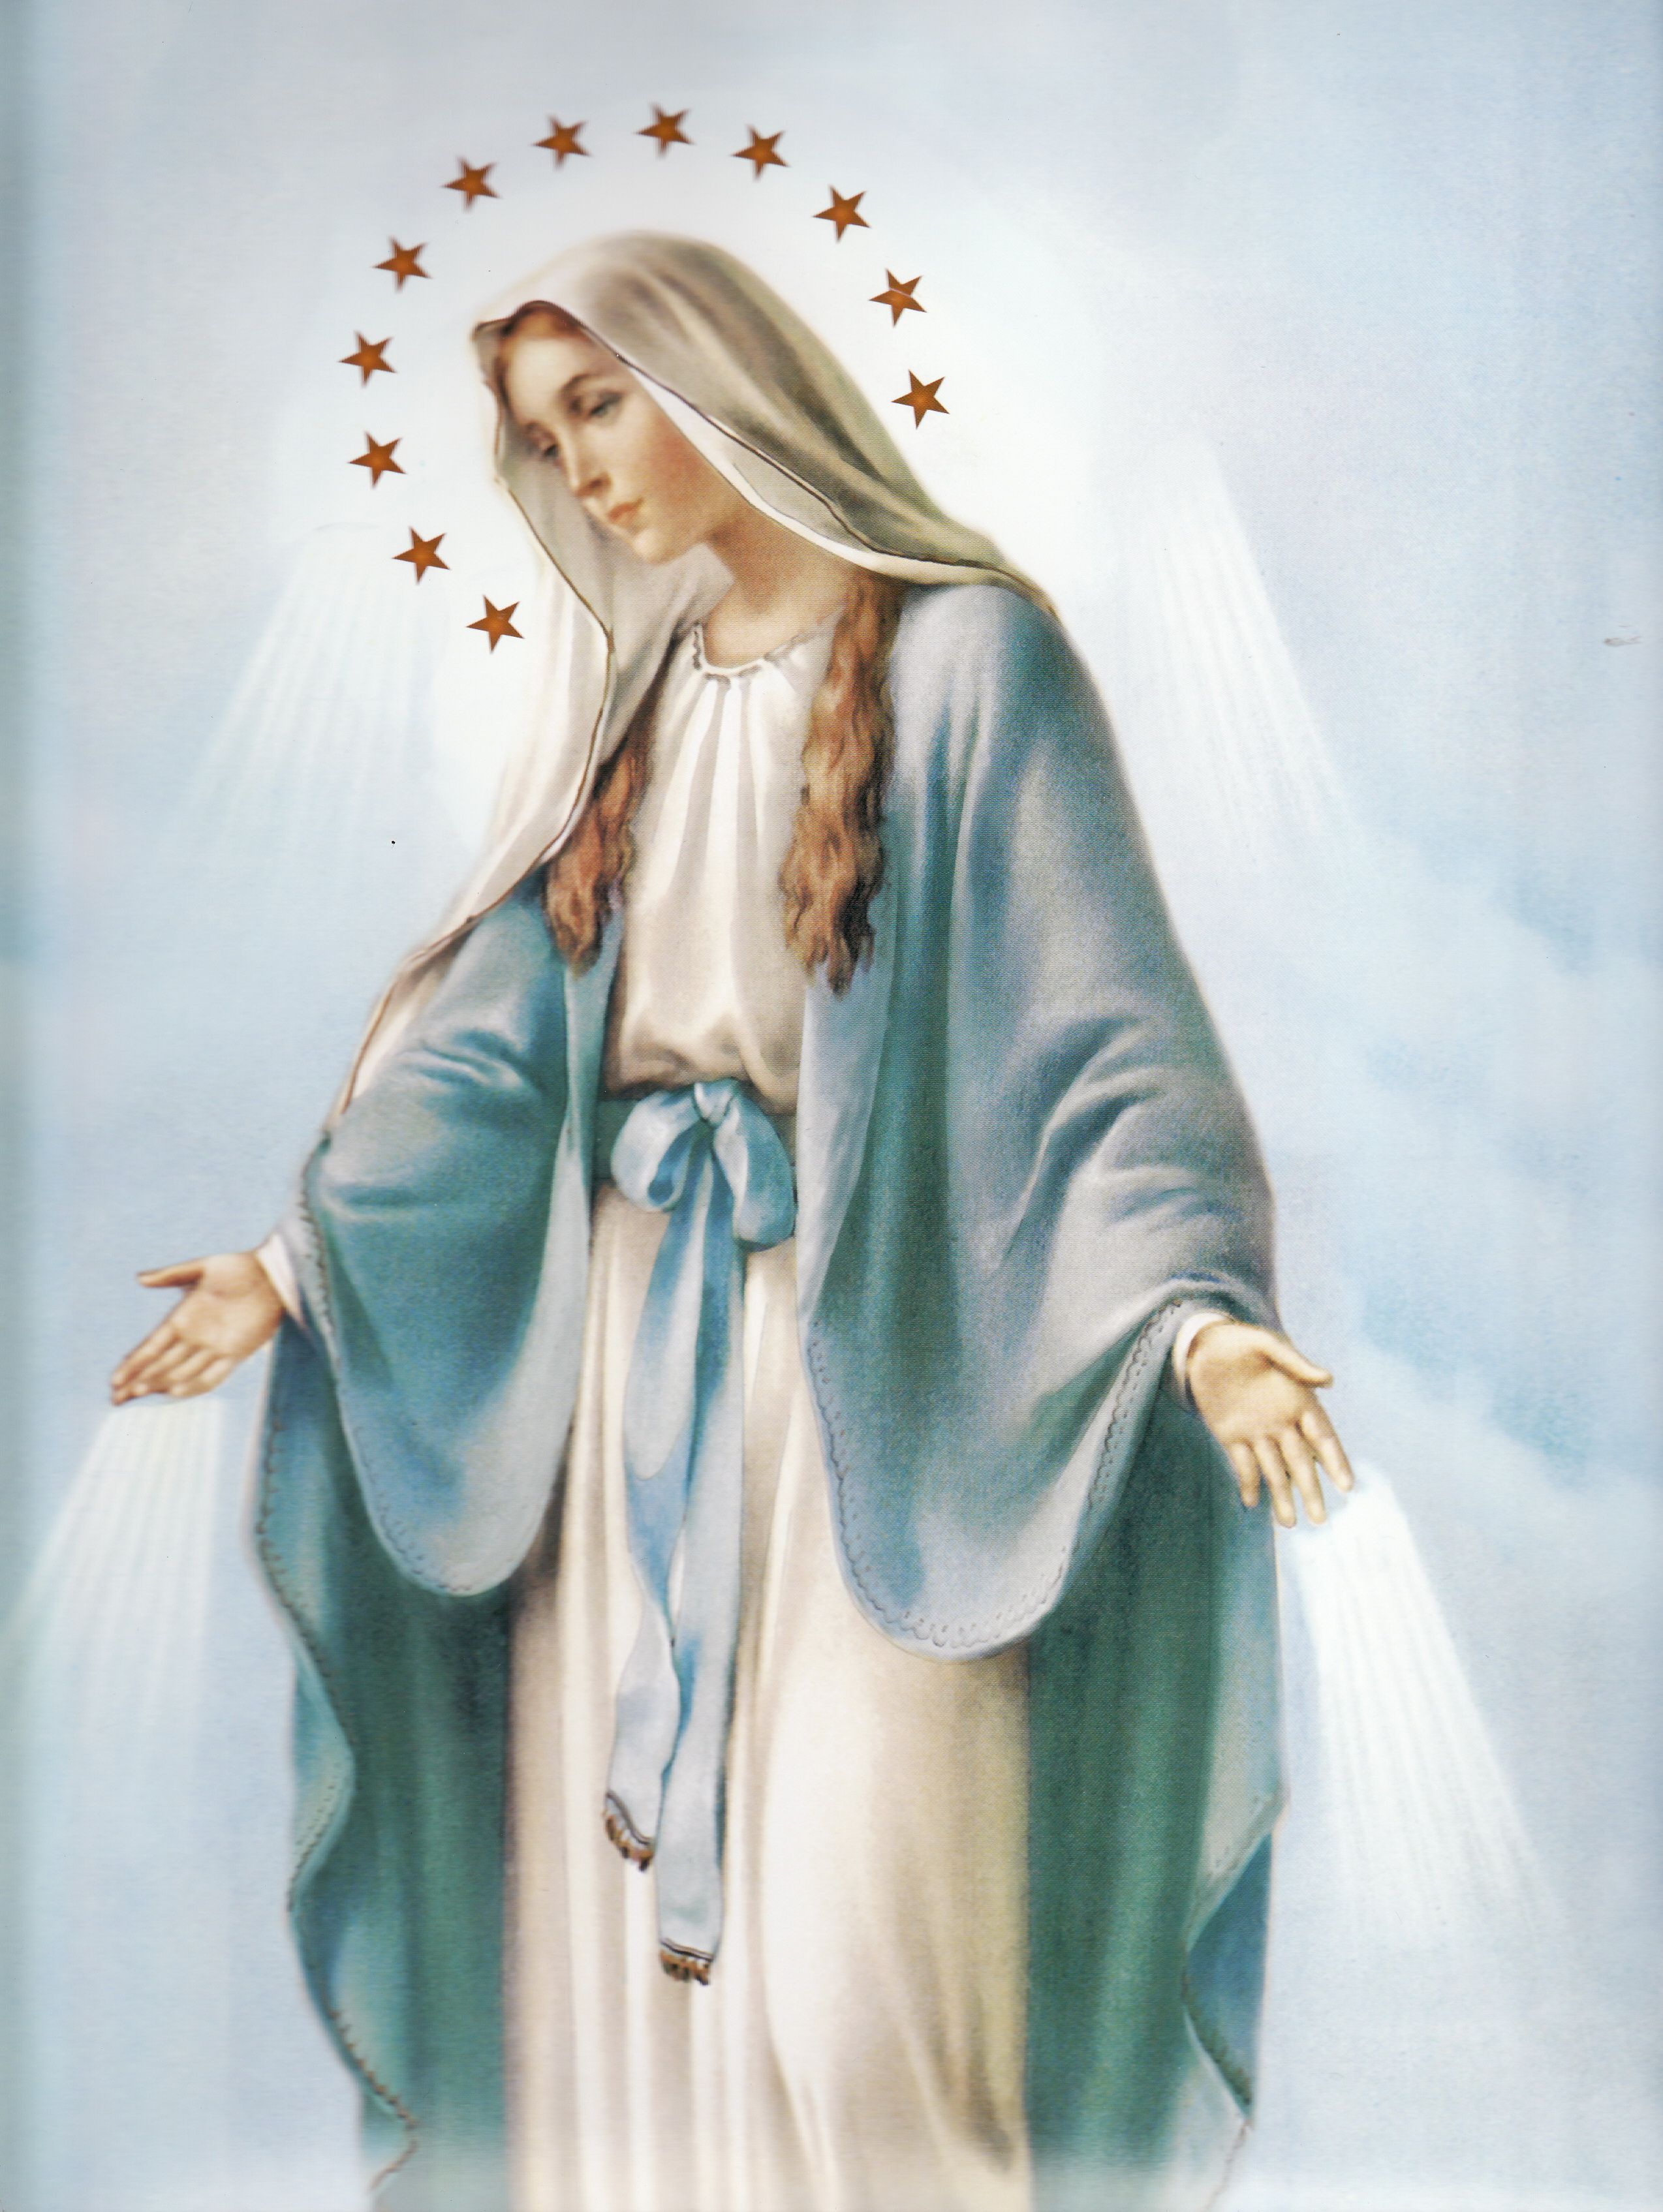 La Santa Virgen Maria madre de Dios. Mary and jesus, Mama mary